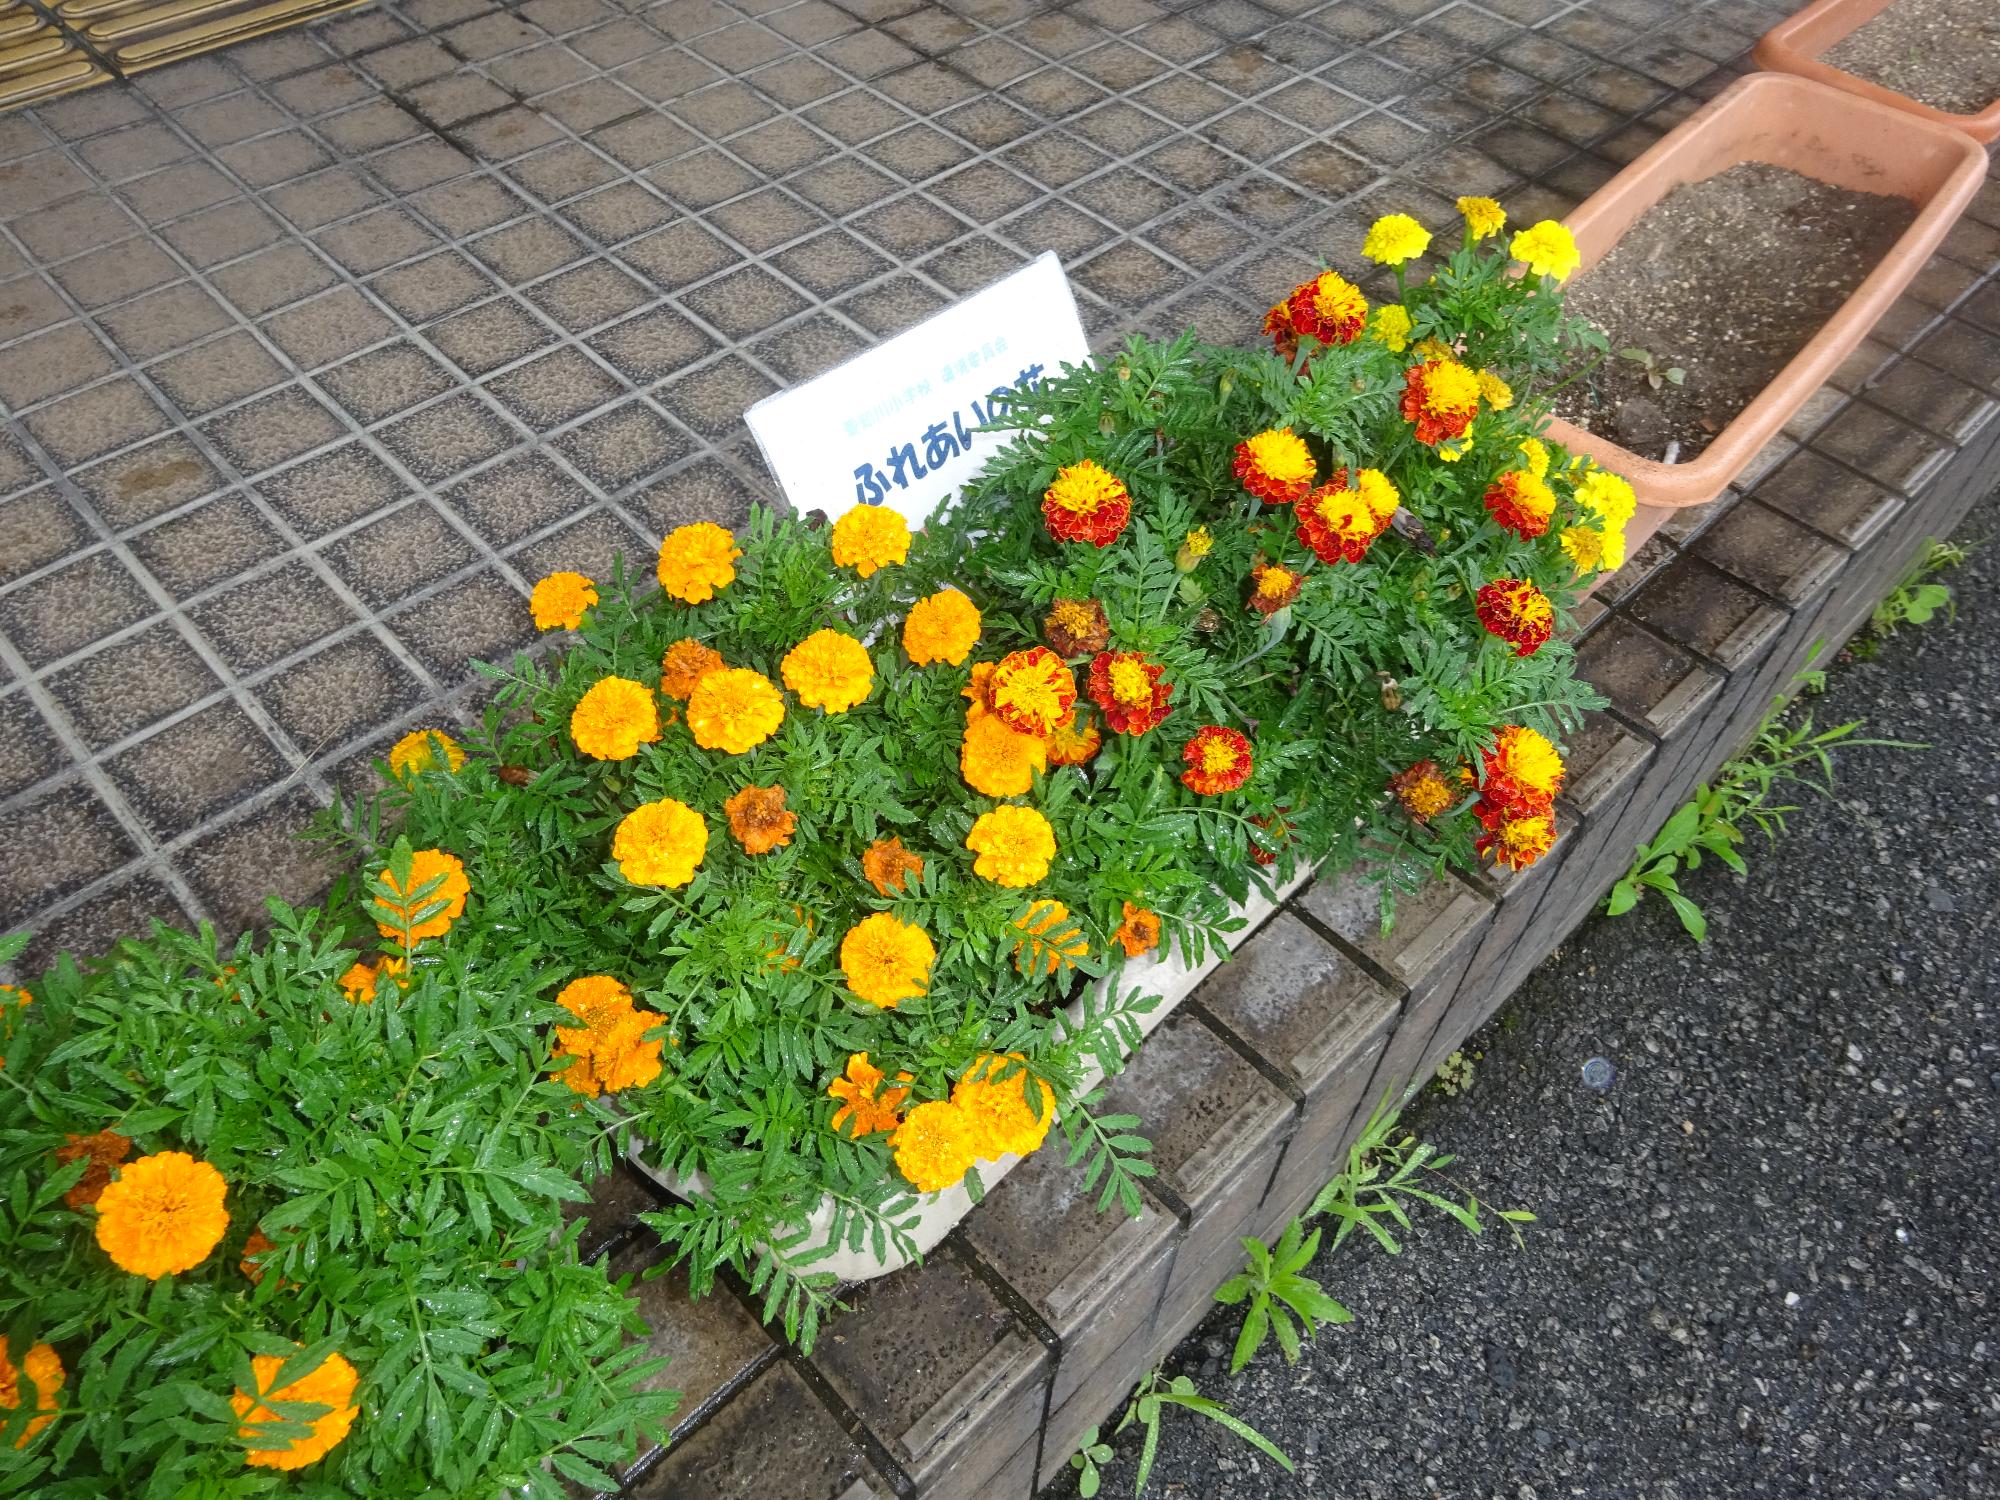 7月17日 ふれあいの花を配布しました 愛荘町